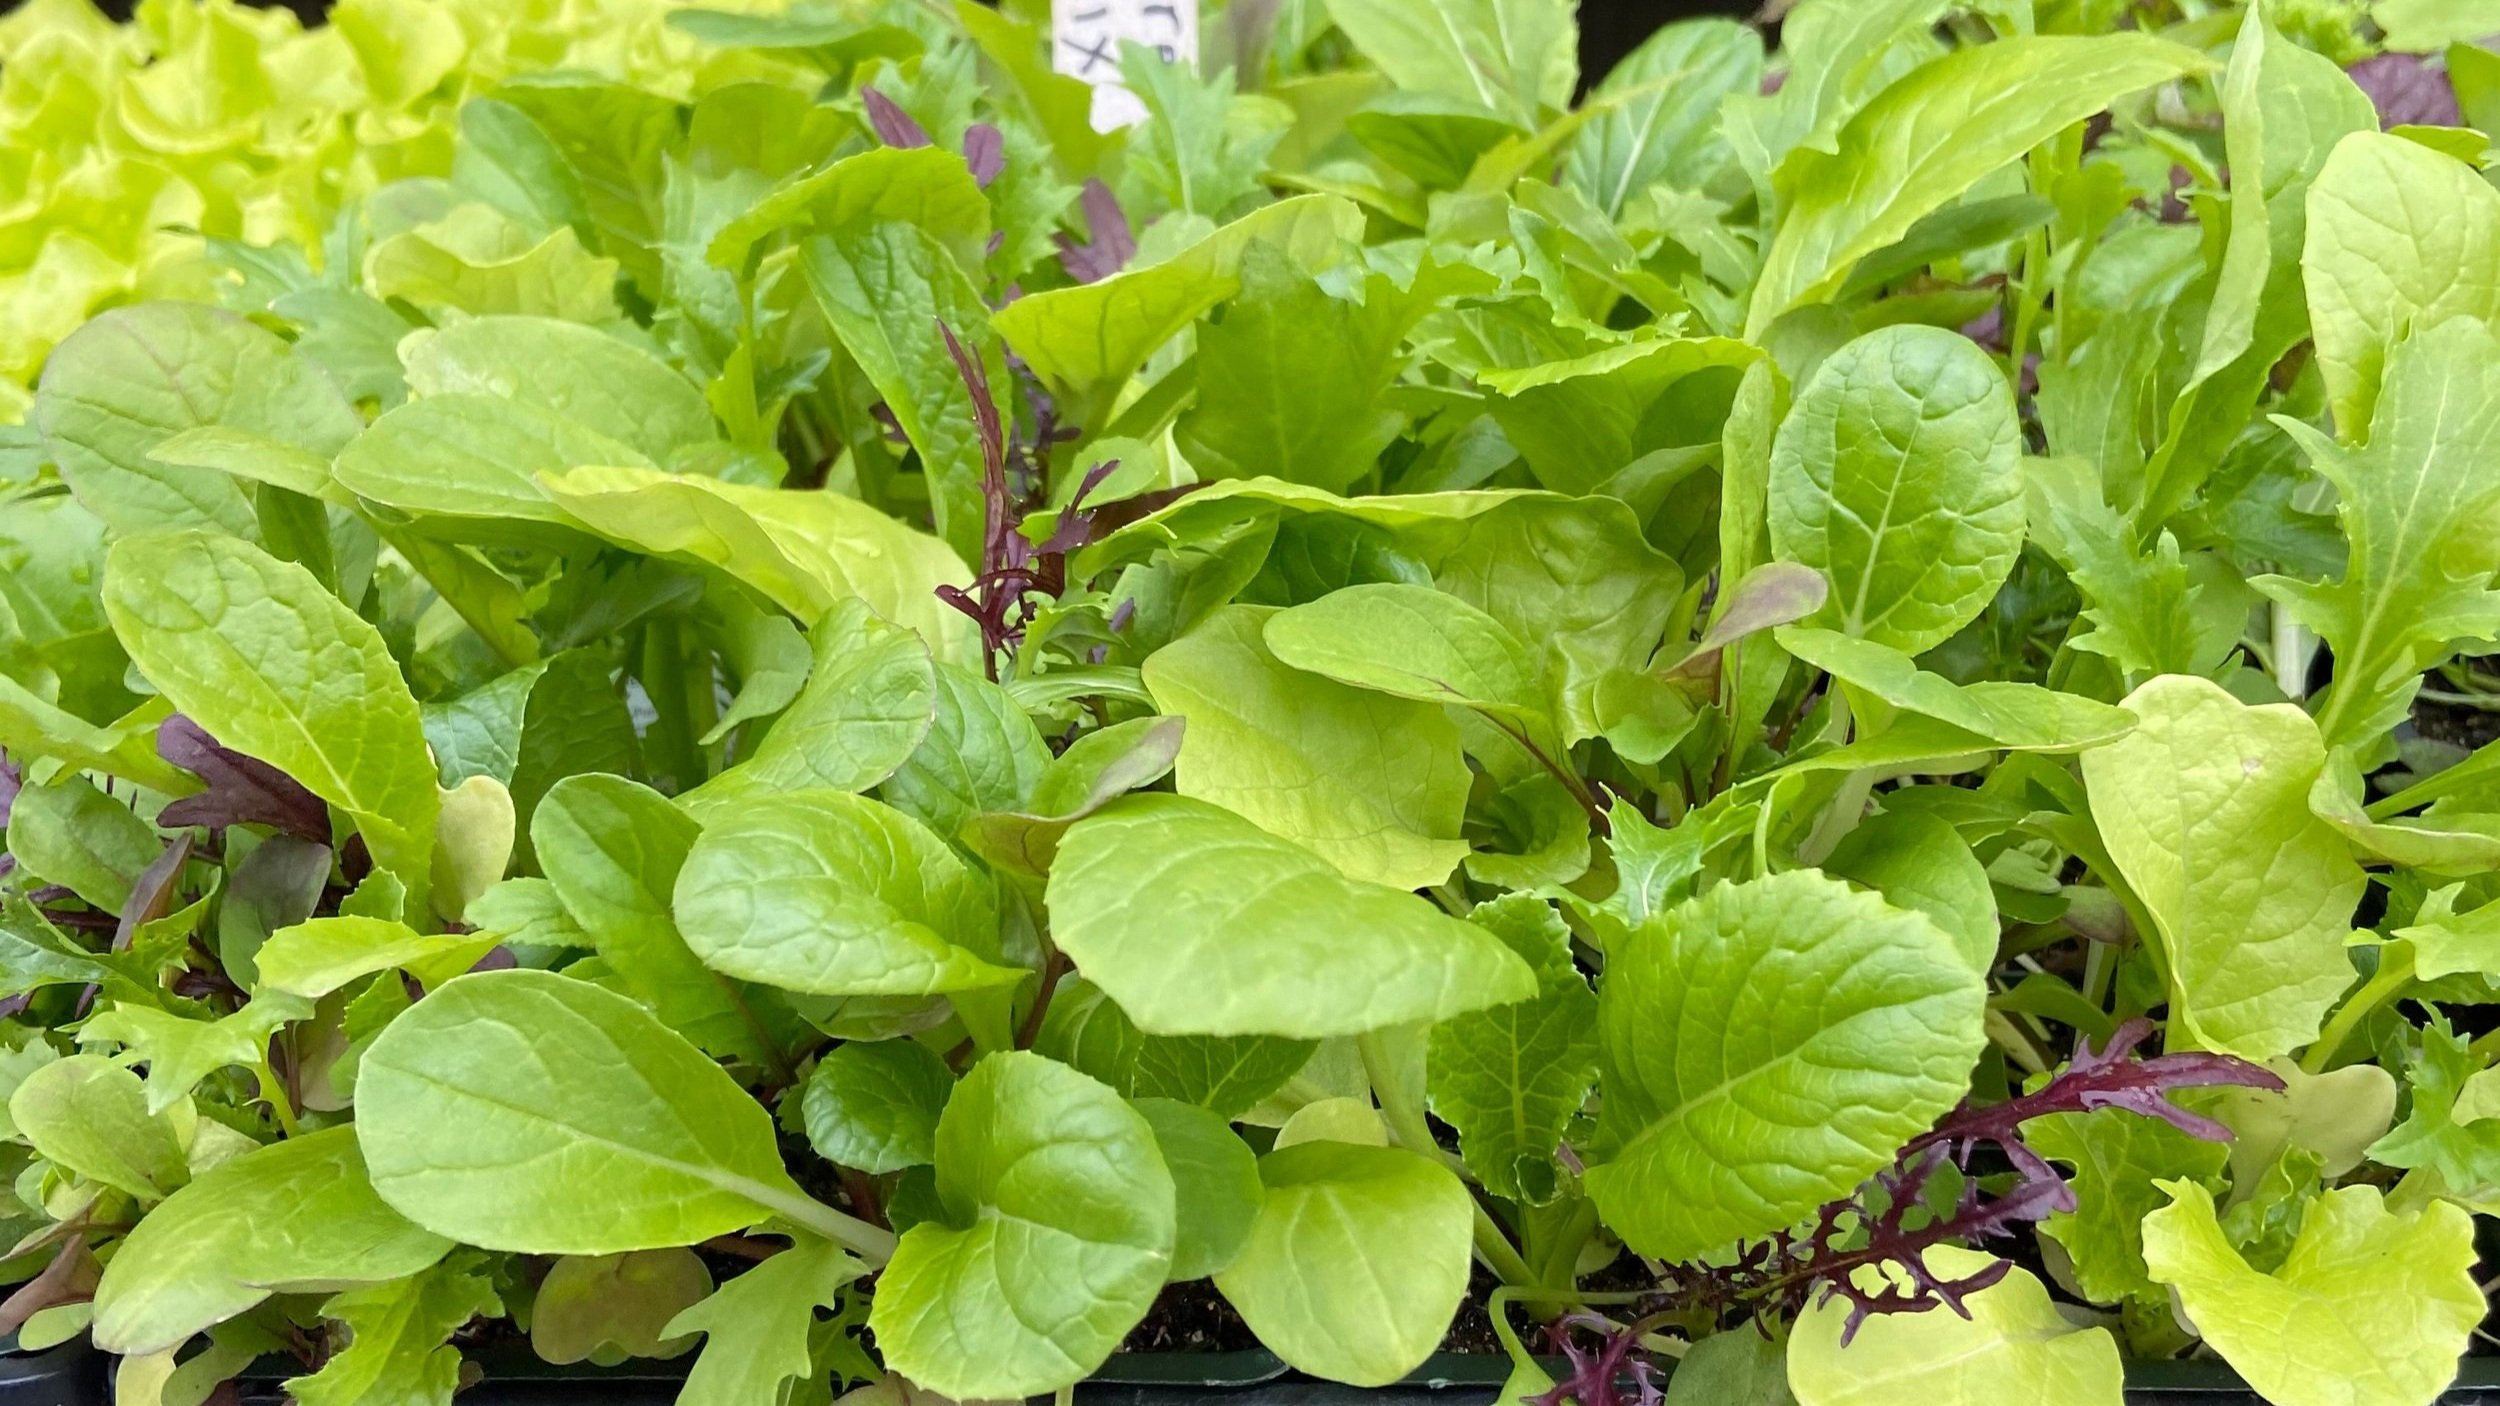 Mesculin Mix Asian Salad Greens